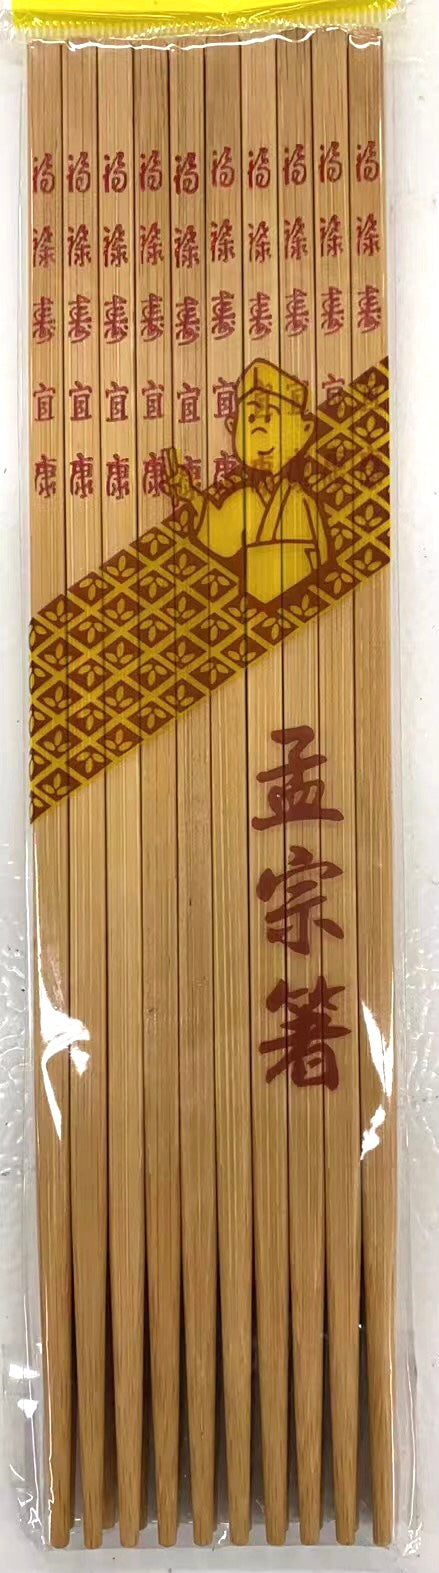 筷子 10双/包